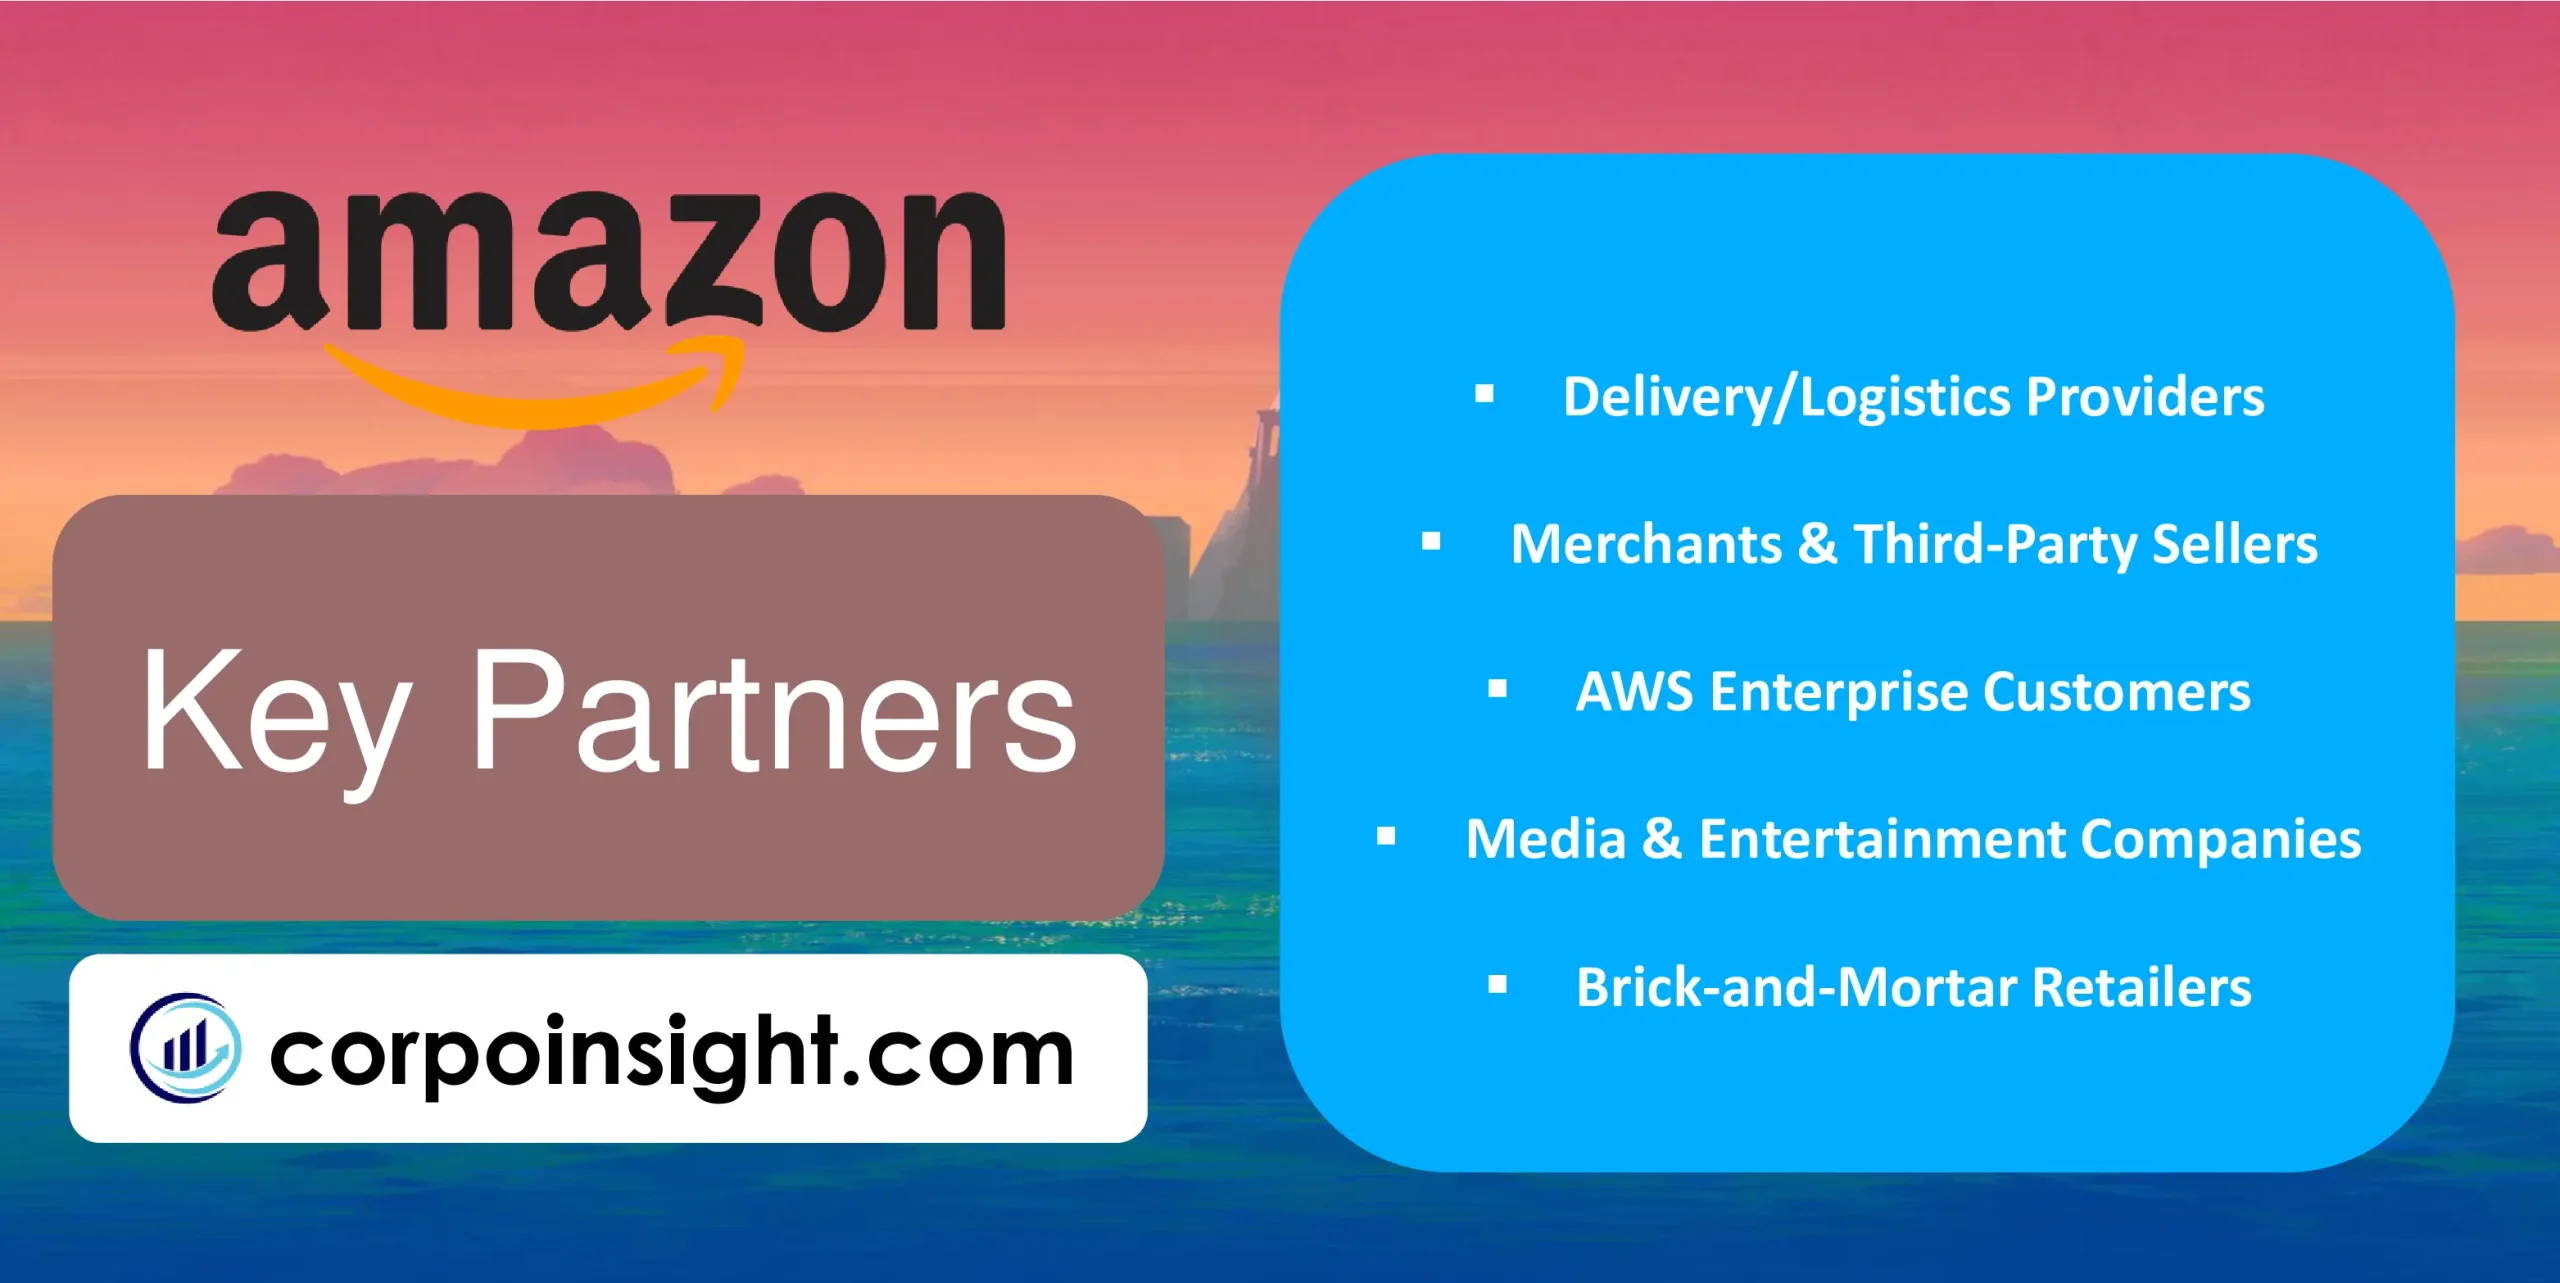 Key Partners of Amazon